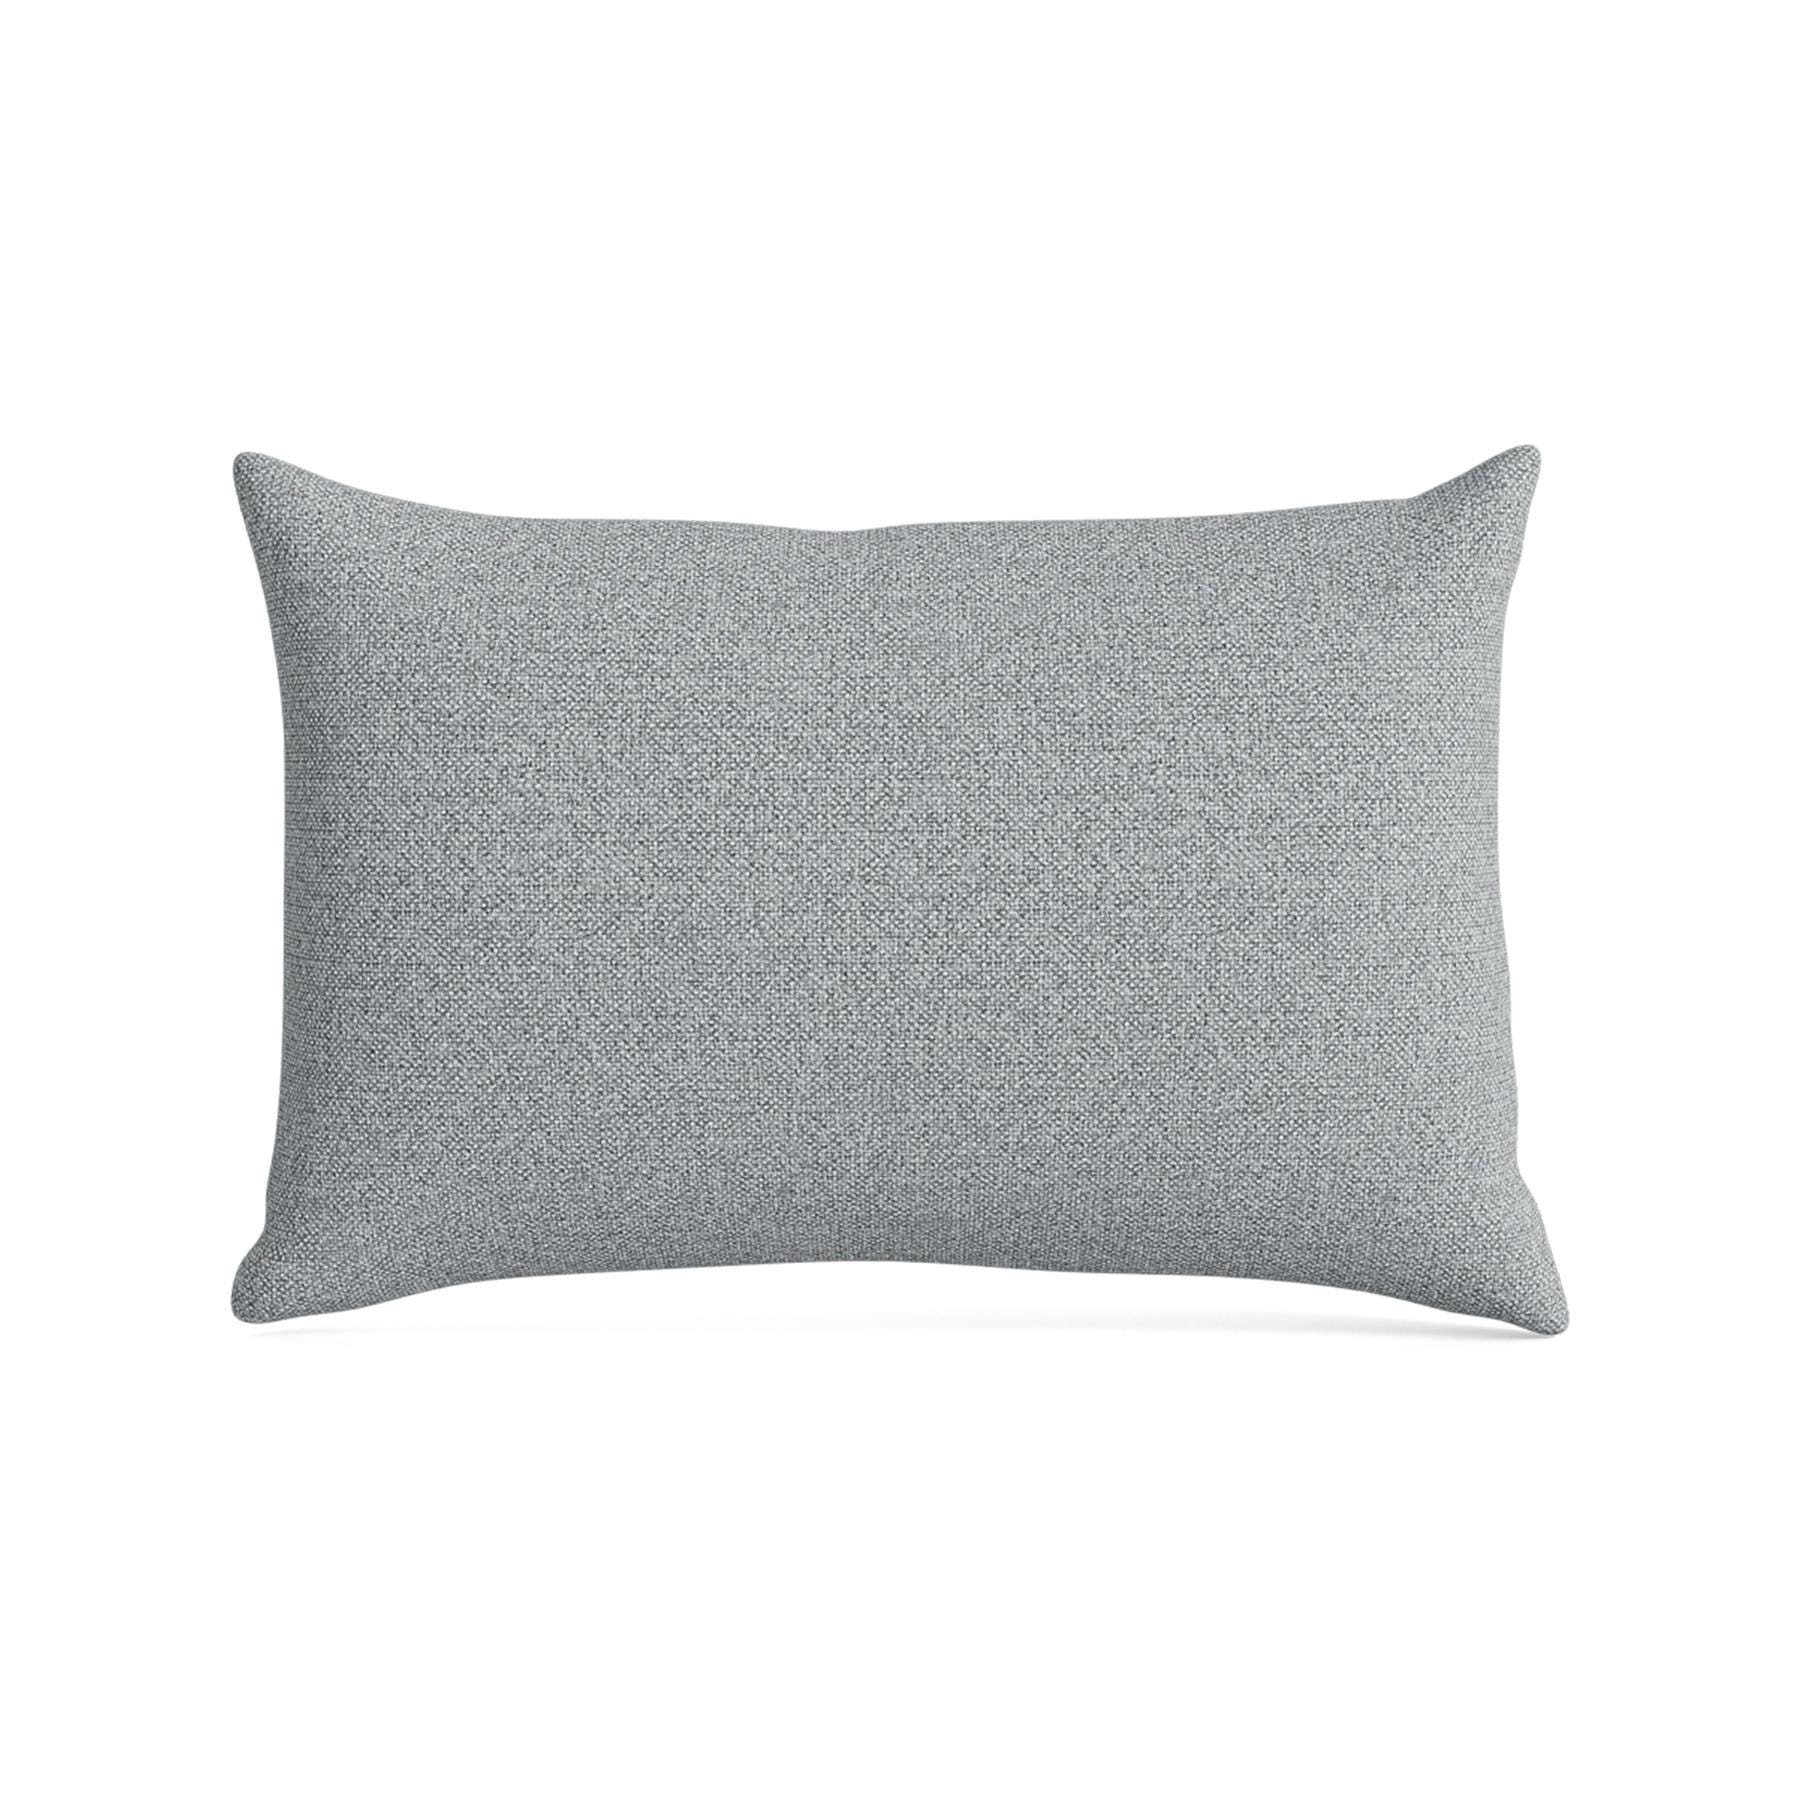 Make Nordic Pillow 40cmx60cm Hallingdal 130 Down And Fibers Grey